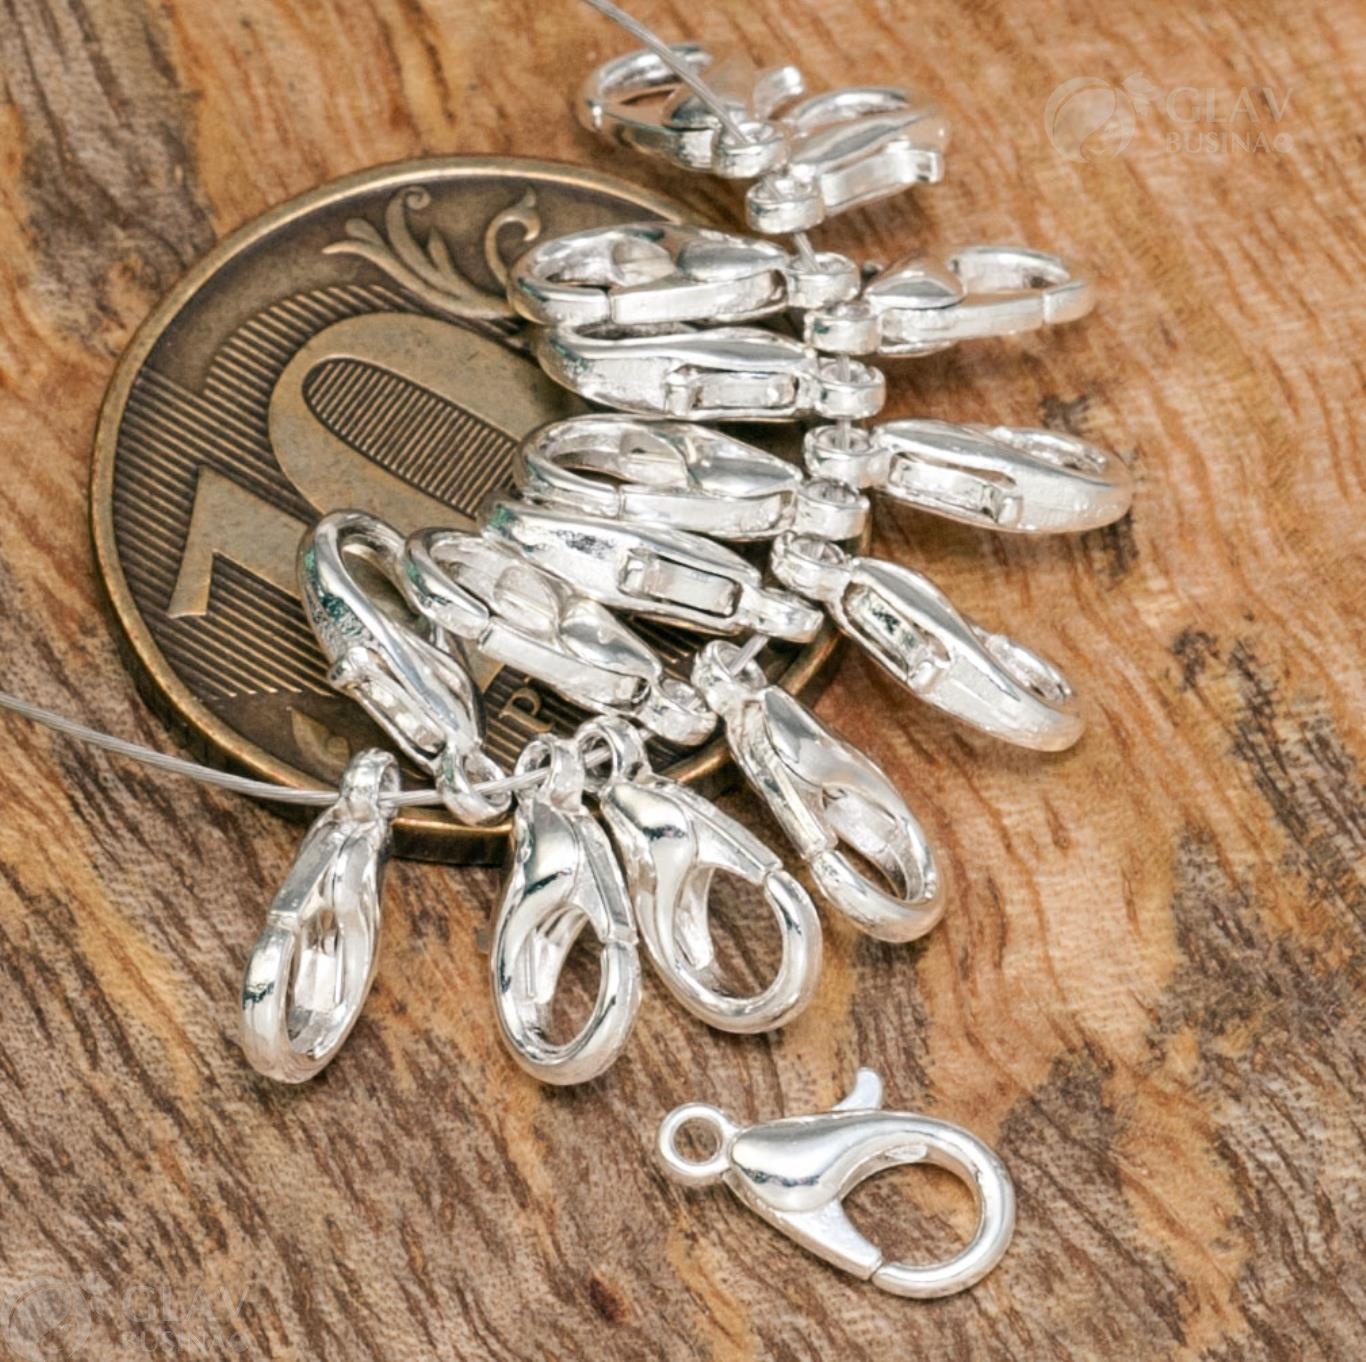 Миниатюрная застёжка-лобстер цвета серебра из ювелирного сплава, длиной 10 мм, отверстие 1.5 мм, вес 0.22 г - прочная для бижутерии.